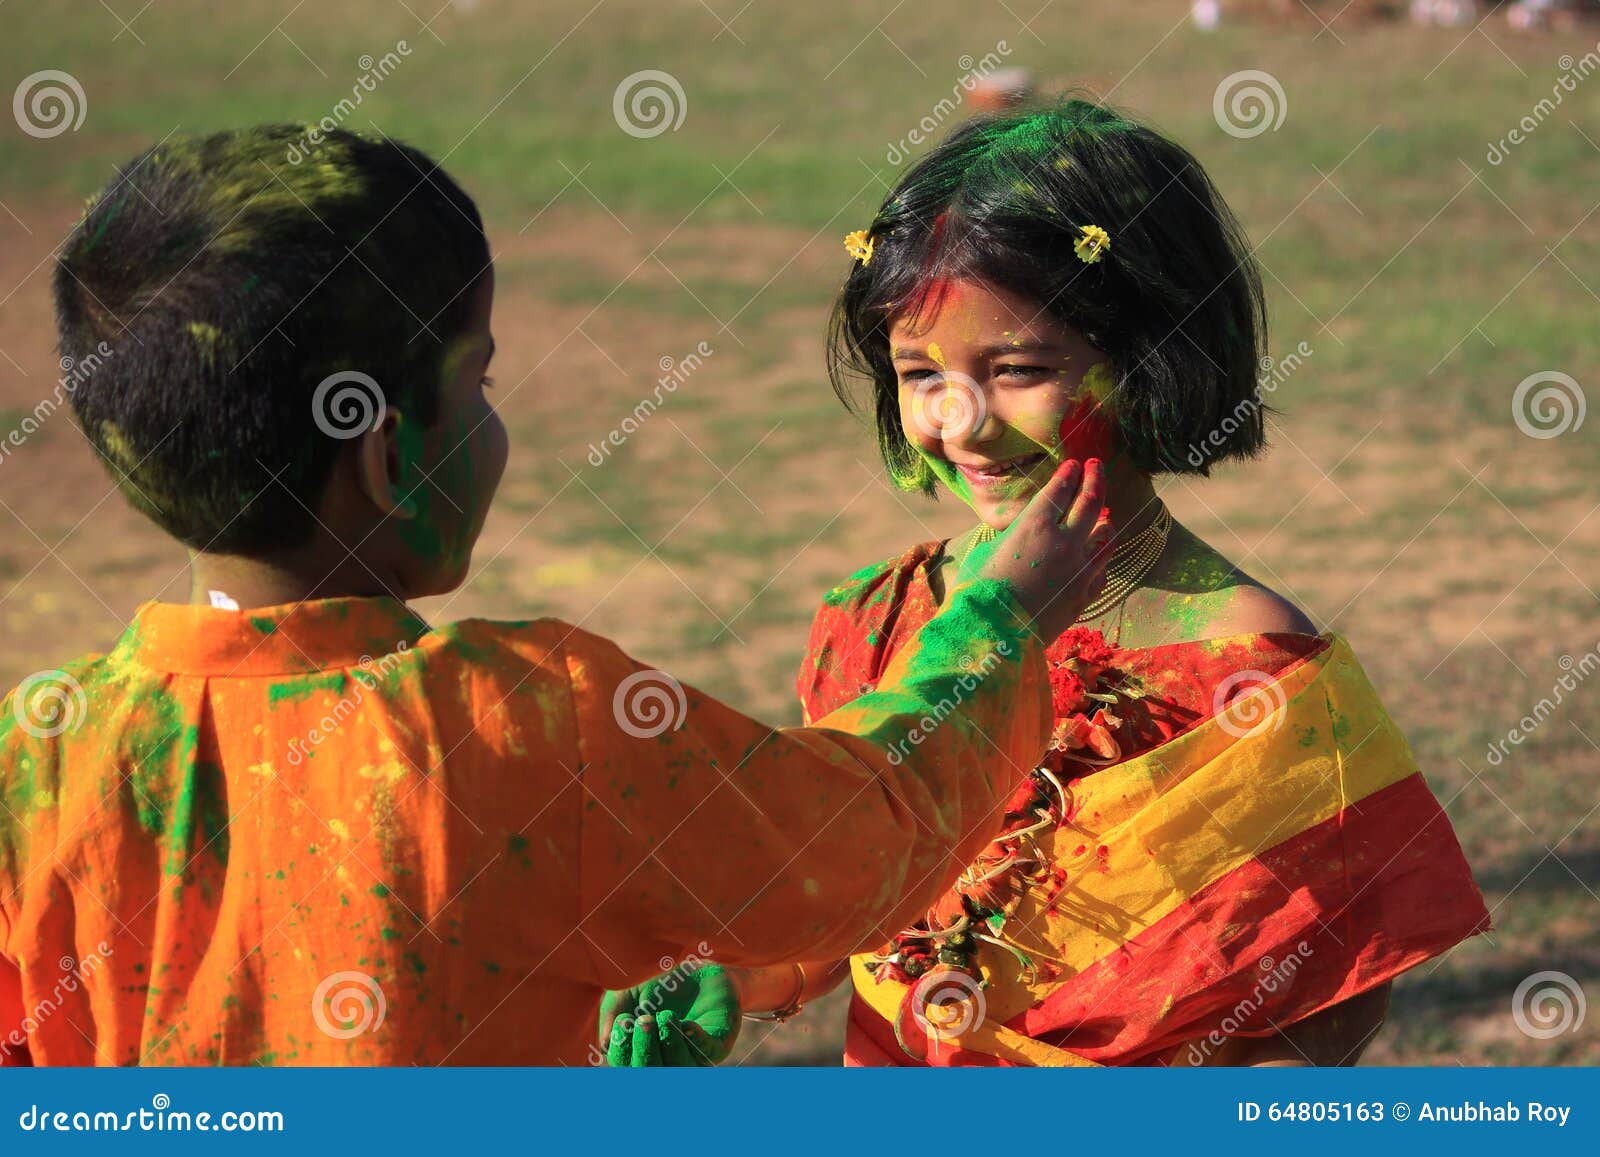 印度色彩节庆快乐五彩背景插图 向量例证. 插画 包括有 展开, 喜悦, 活动, 查出, 创造性, 背包 - 243268993